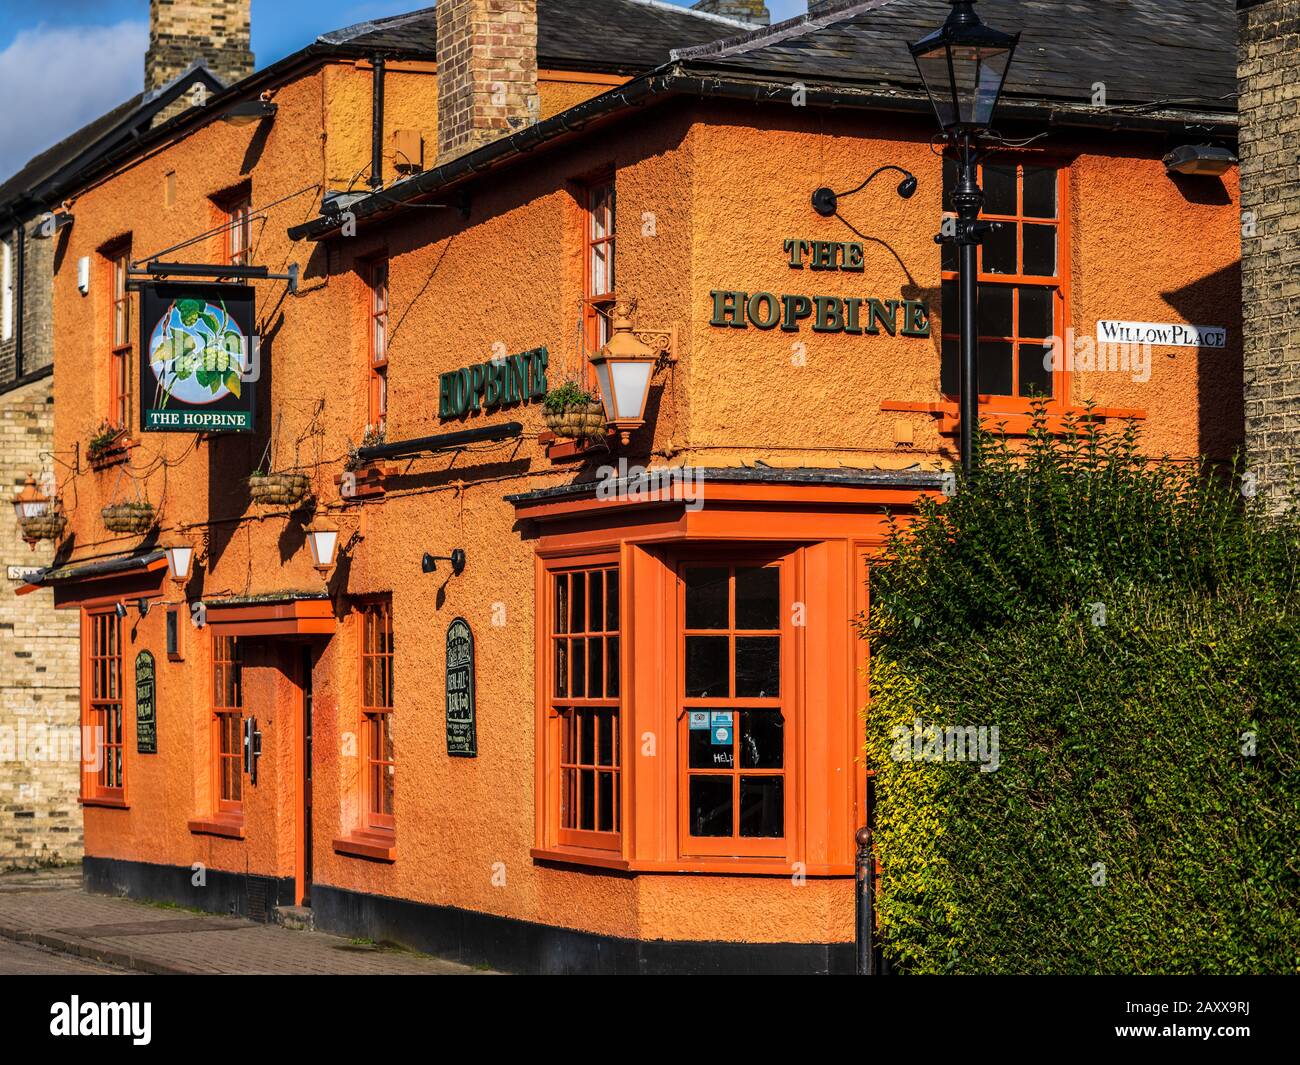 Cambridge Pubs - el pub Hopbine Cambridge, establecido en 1839. Cerrada 2019. Foto de stock